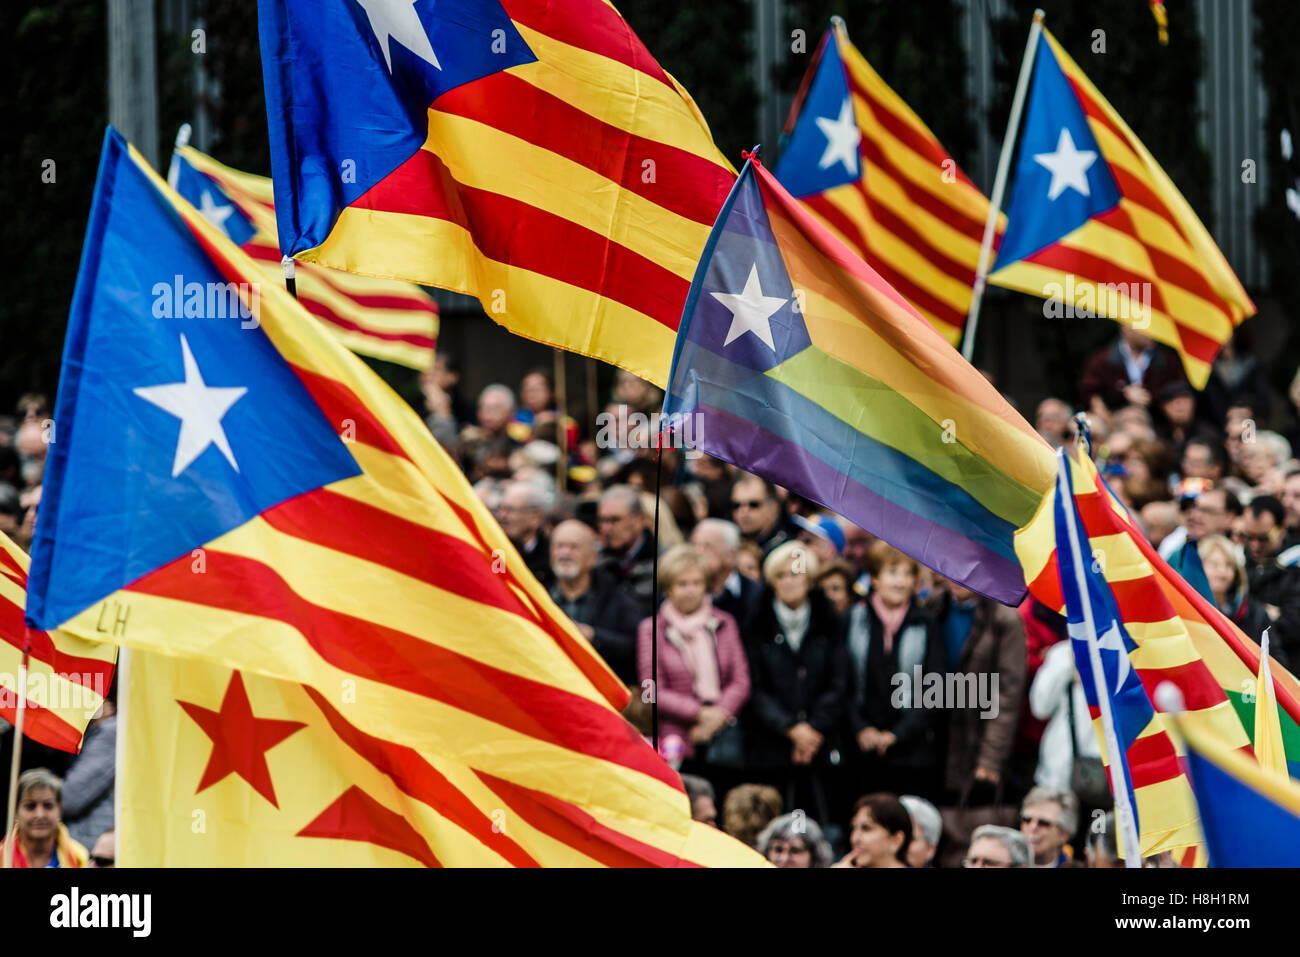 Barcelone, Espagne. 13 Novembre 2016 : l'indépendance catalane drapeaux vague comme des dizaines de milliers de pro-indépendantistes catalans se réunissent à Barcelone, fontaines Montjuic pour protester contre la persécution légale de politiciens pro-sécession catalane et de la Catalogne : Crédit matthi/Alamy Live News Banque D'Images